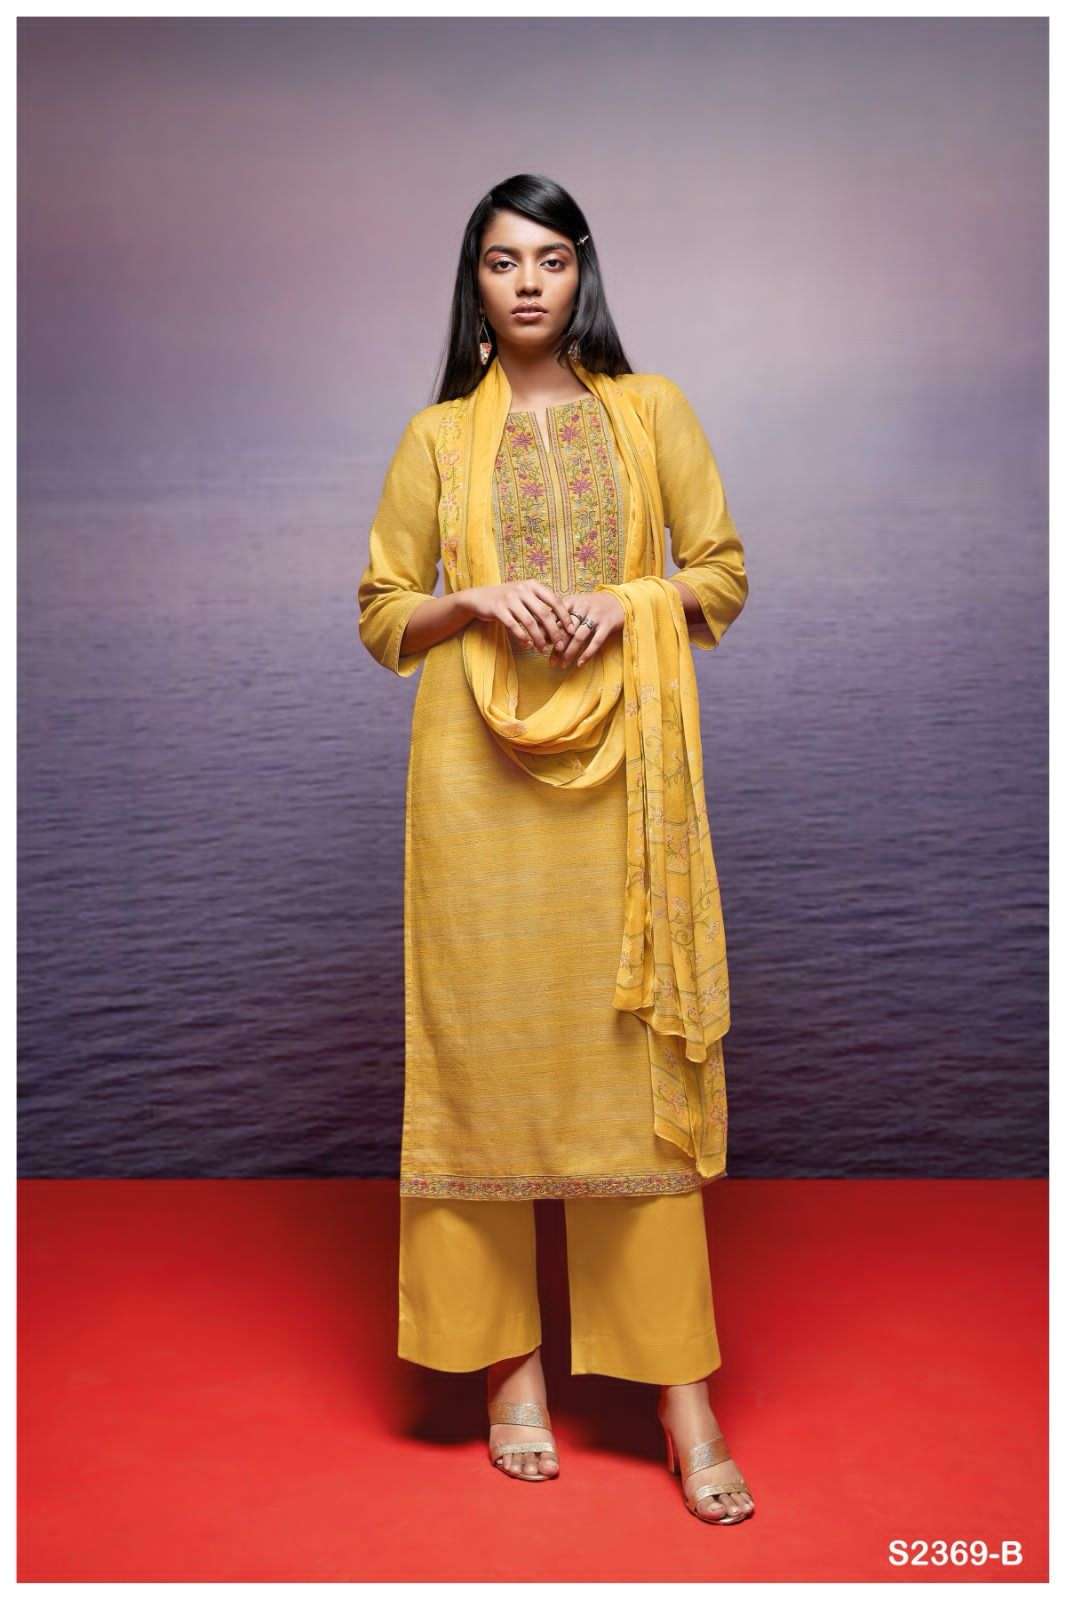 ganga kori 2369 colour series latest designer pakistani salwar kameez wholesaler surat gujarat